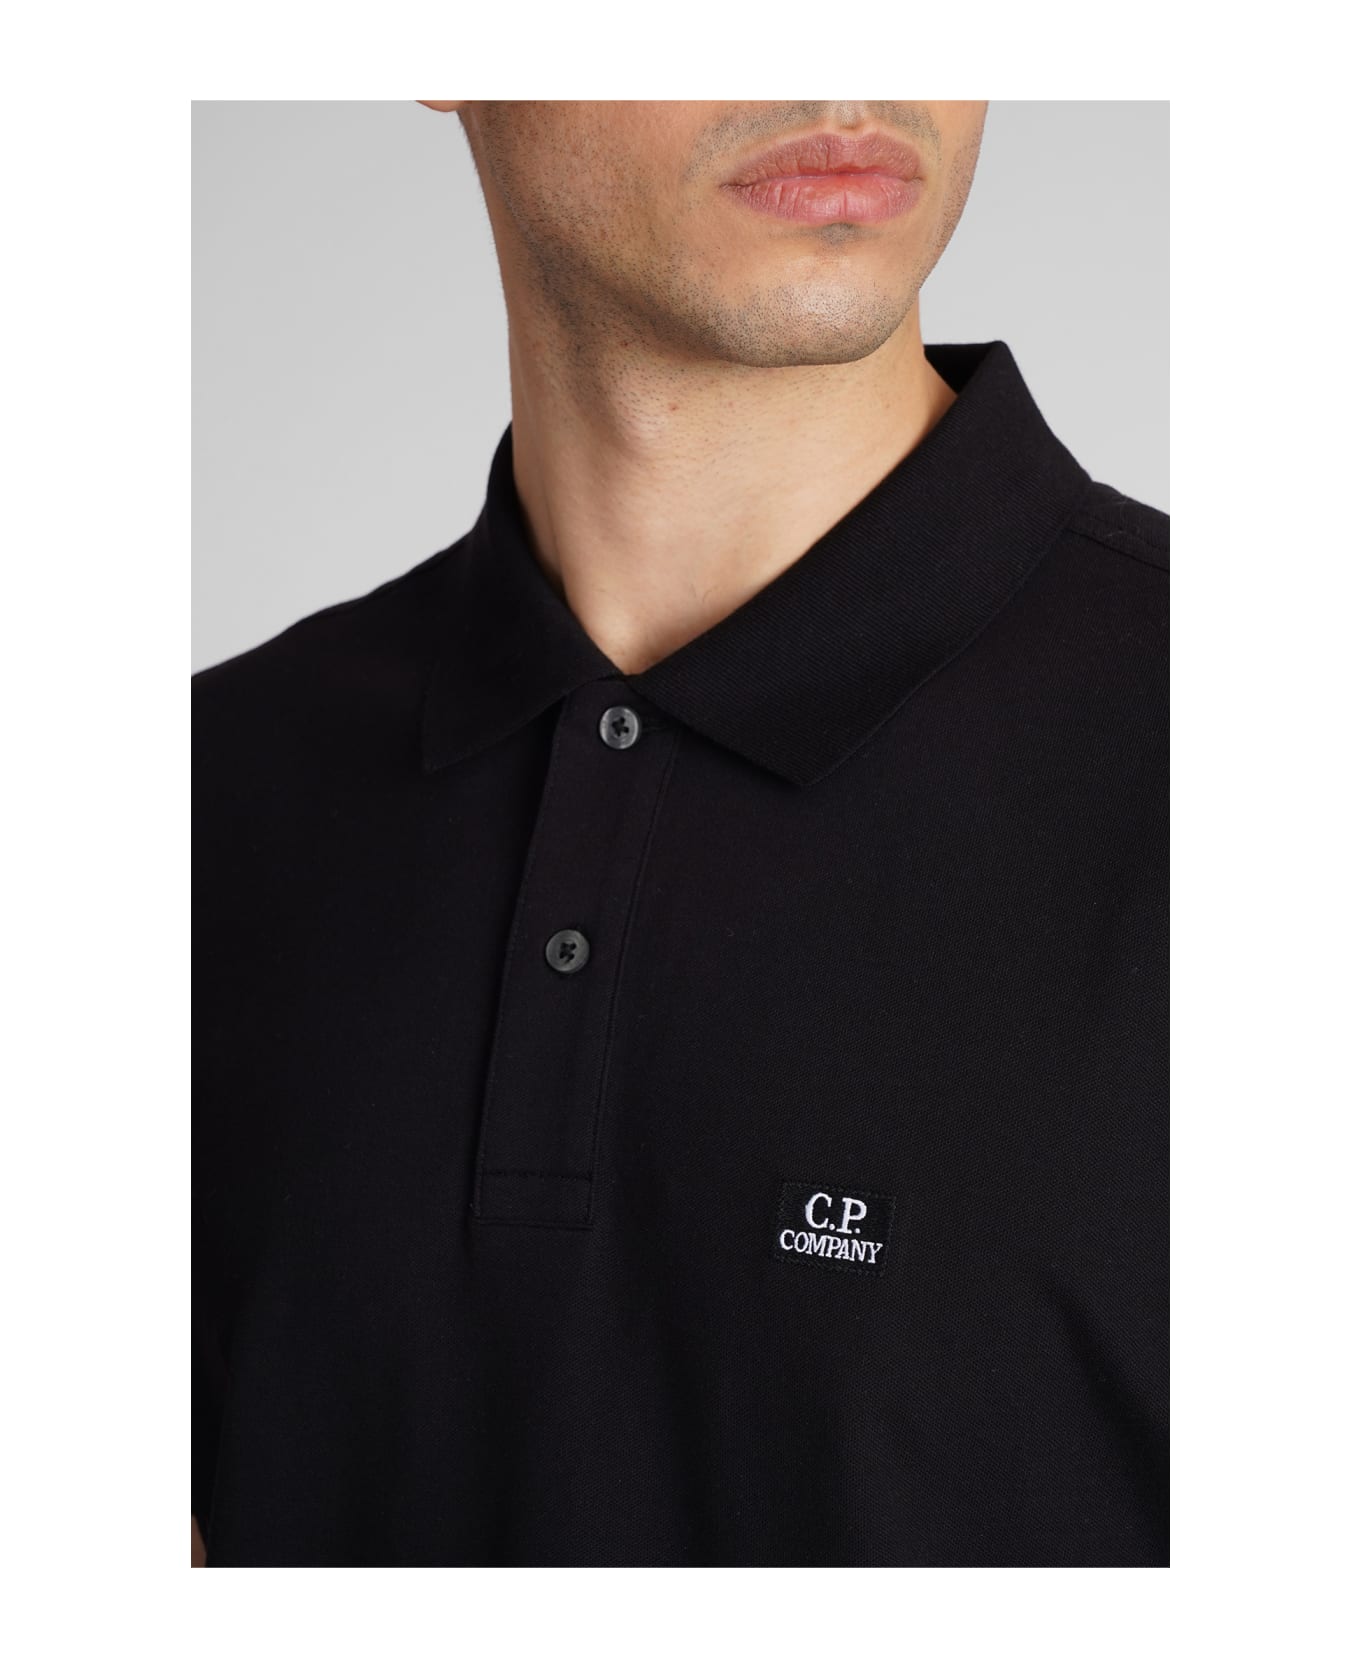 C.P. Company Polo In Black Cotton - black ポロシャツ